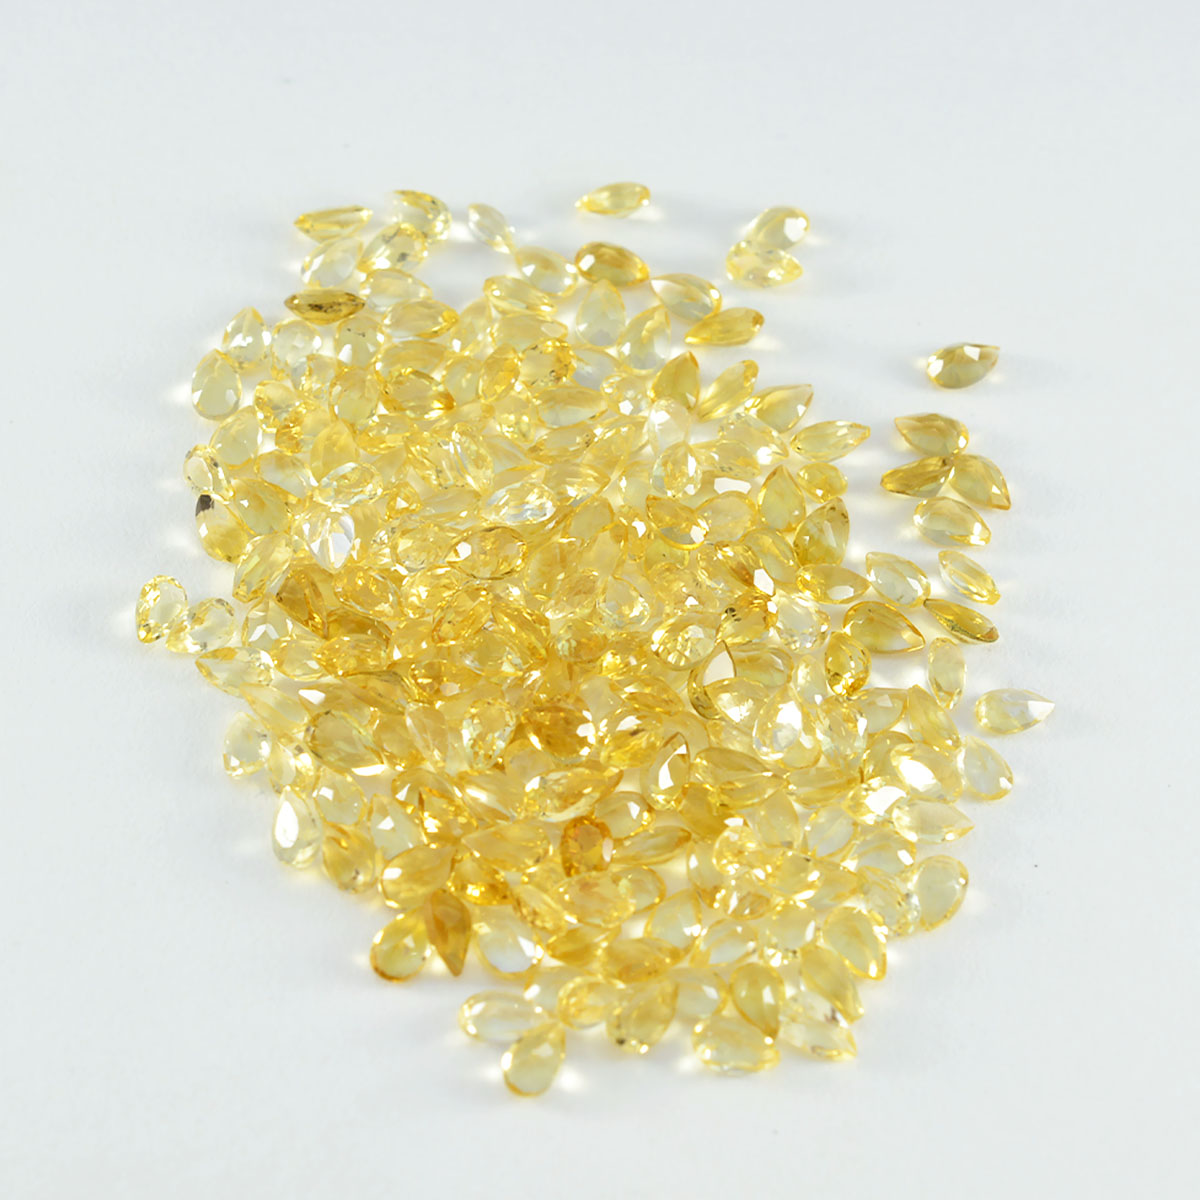 riyogems 1 шт. натуральный желтый цитрин ограненный 3x5 мм грушевидной формы, драгоценные камни удивительного качества, россыпь